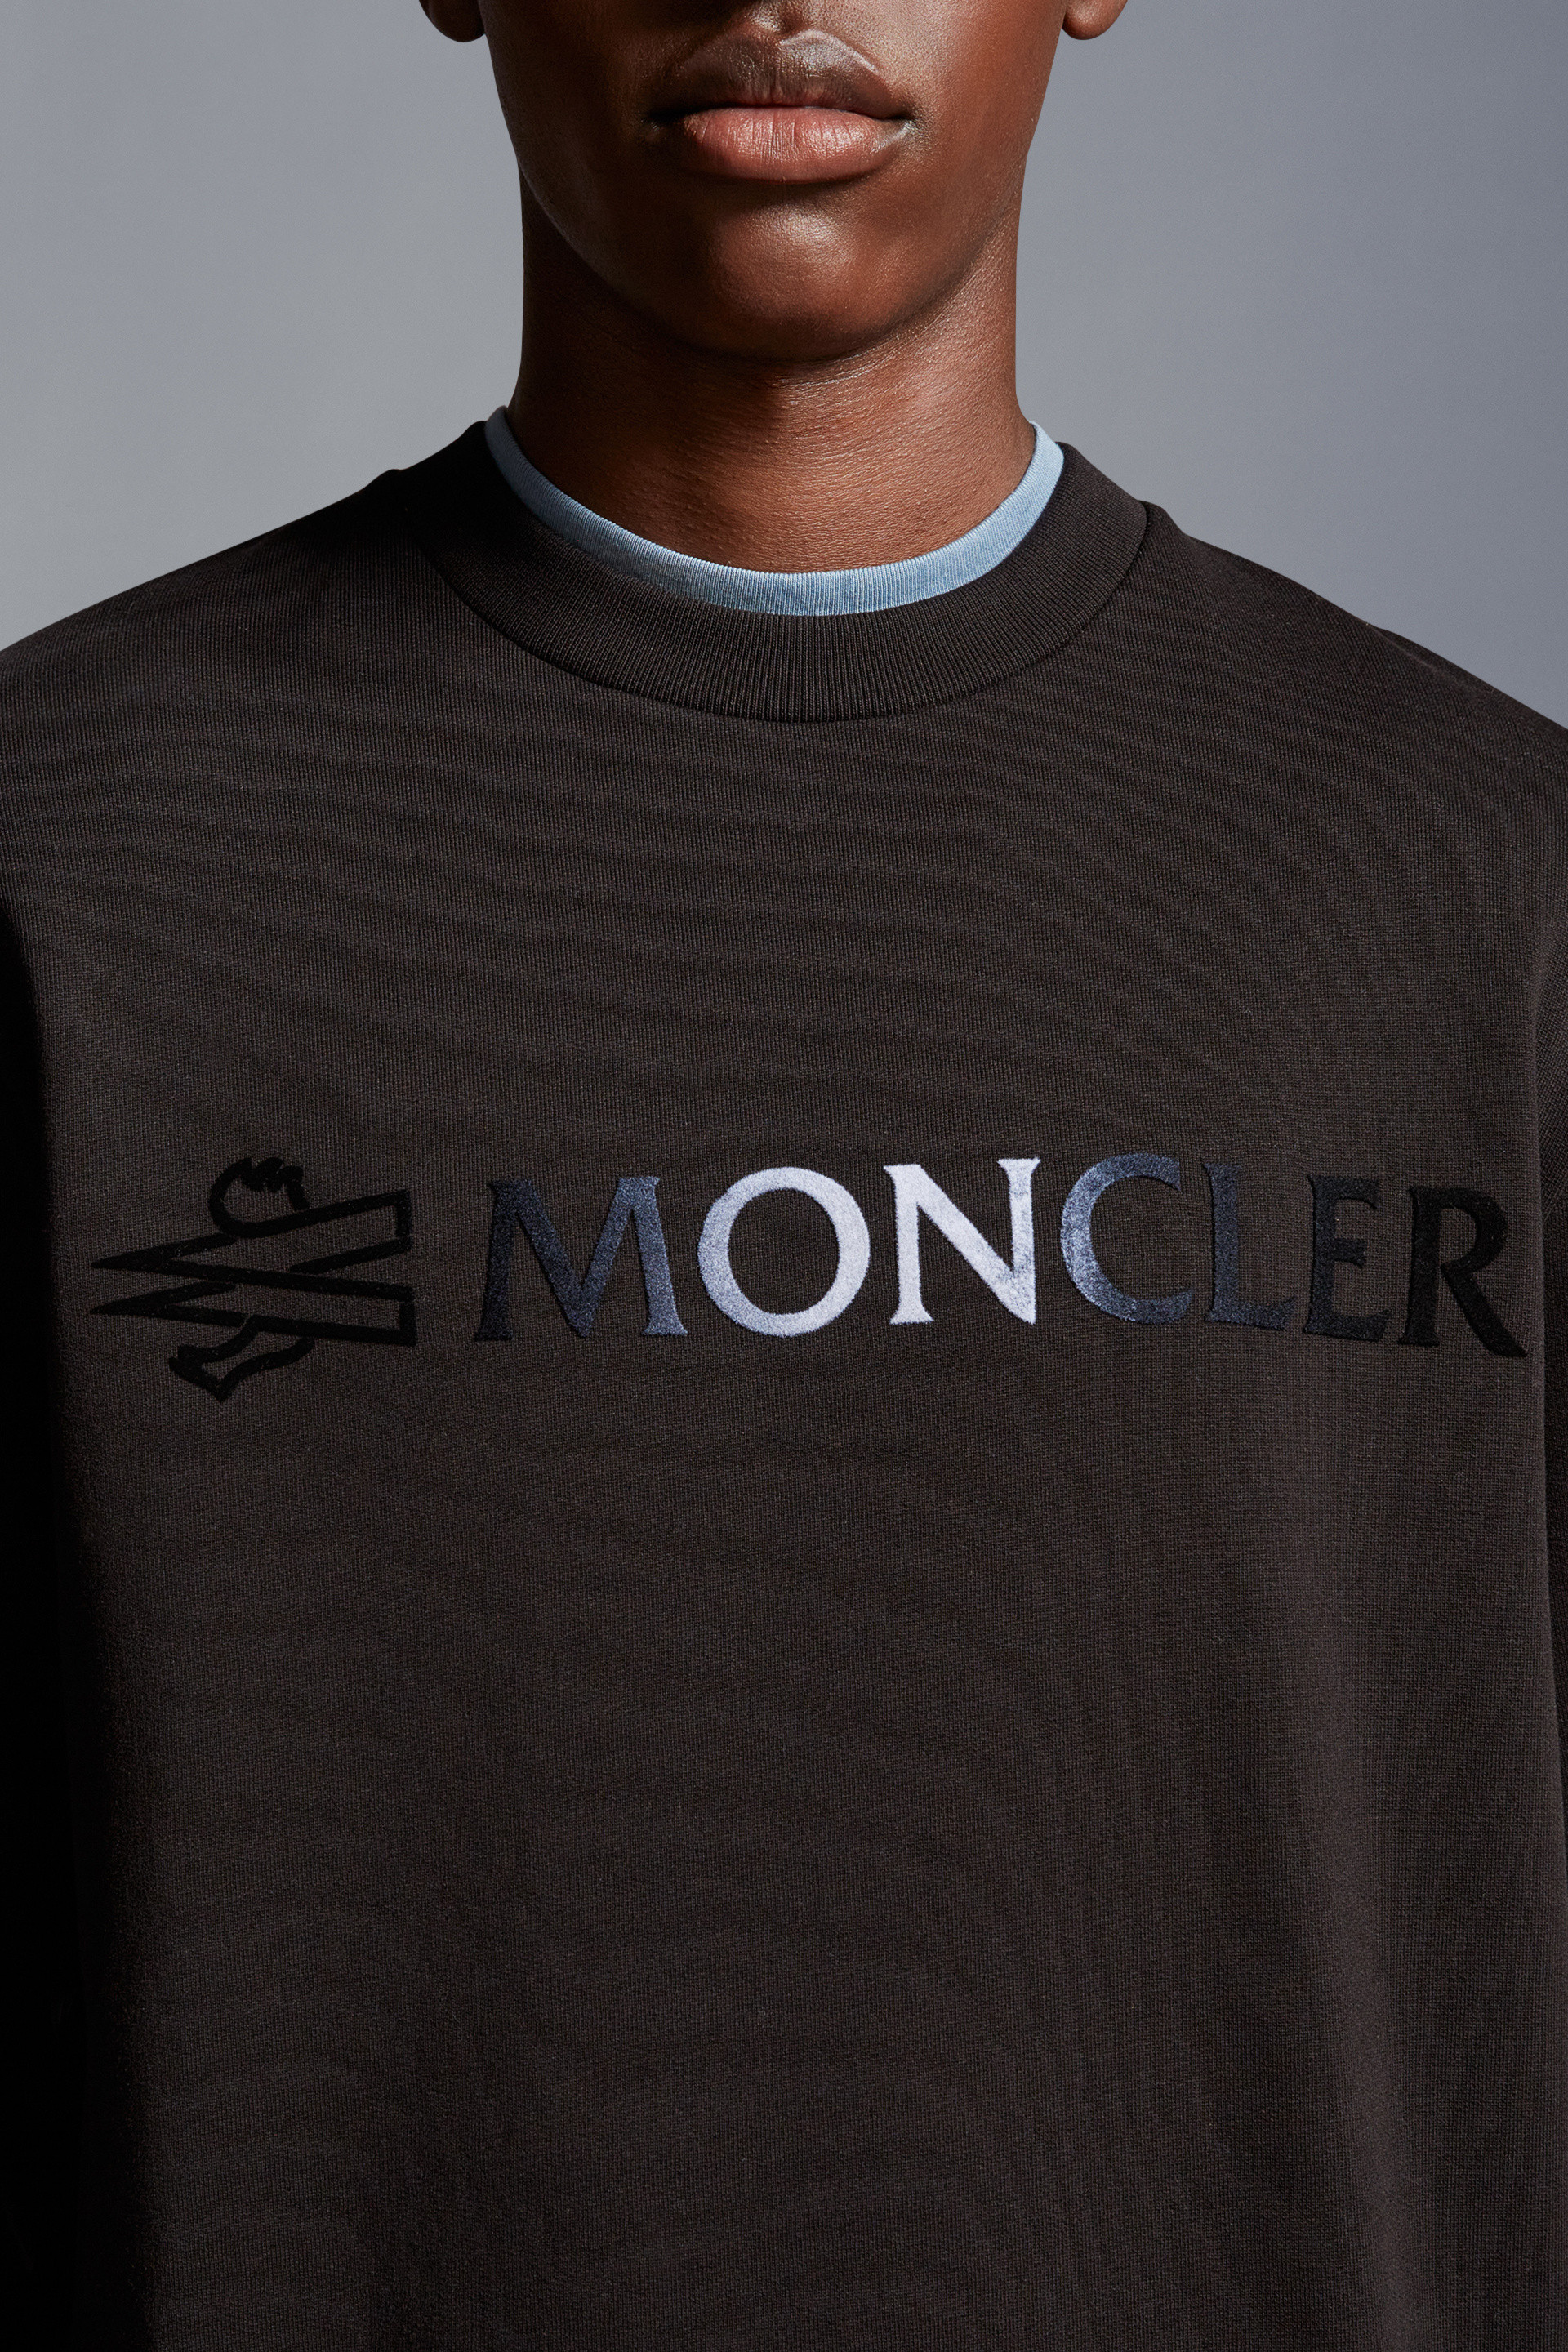 エンボスシリコンロゴ入りXXLサイズ MONCLER モンクレール ロゴスウェットシャツ